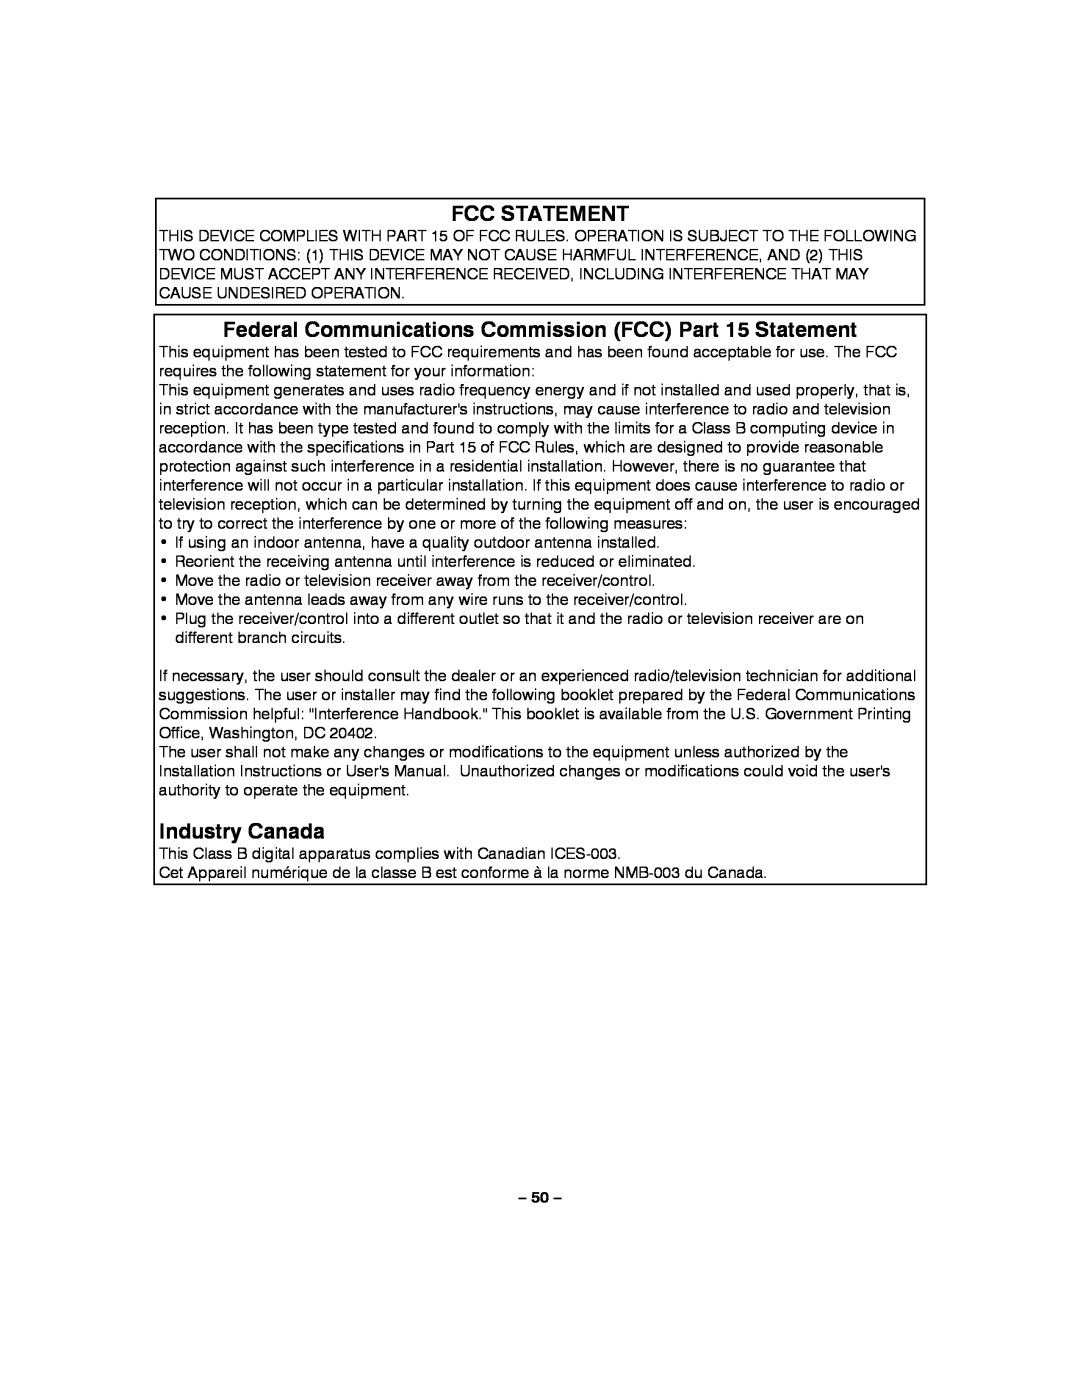 Honeywell LYNXR-2 manual Fcc Statement, Industry Canada 